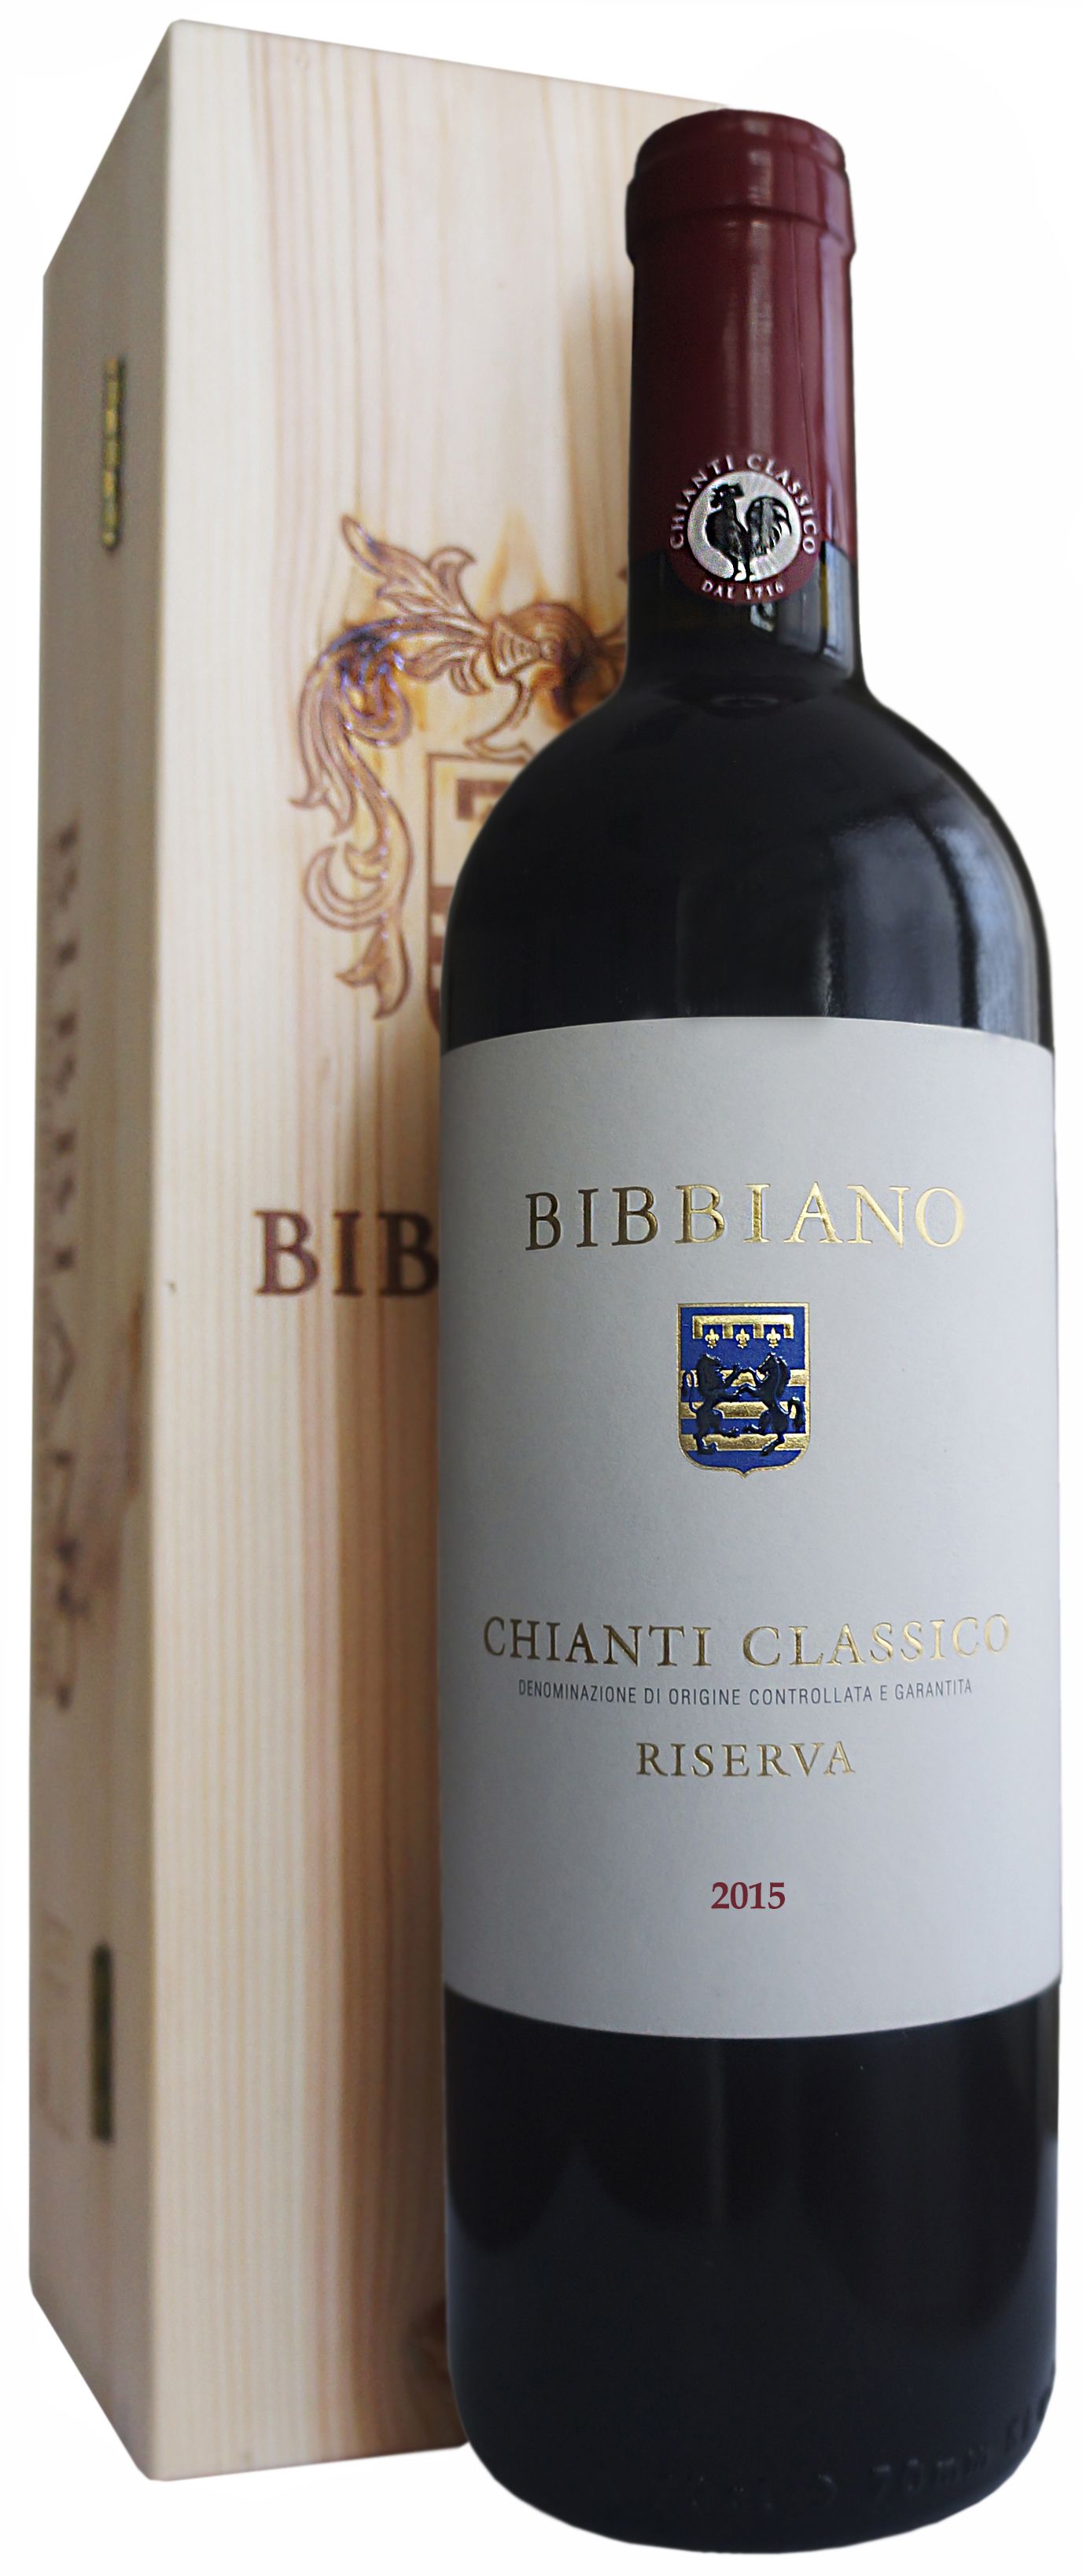 Bibbiano, Chianti Classico Riserva, 2015 (Gift Box)